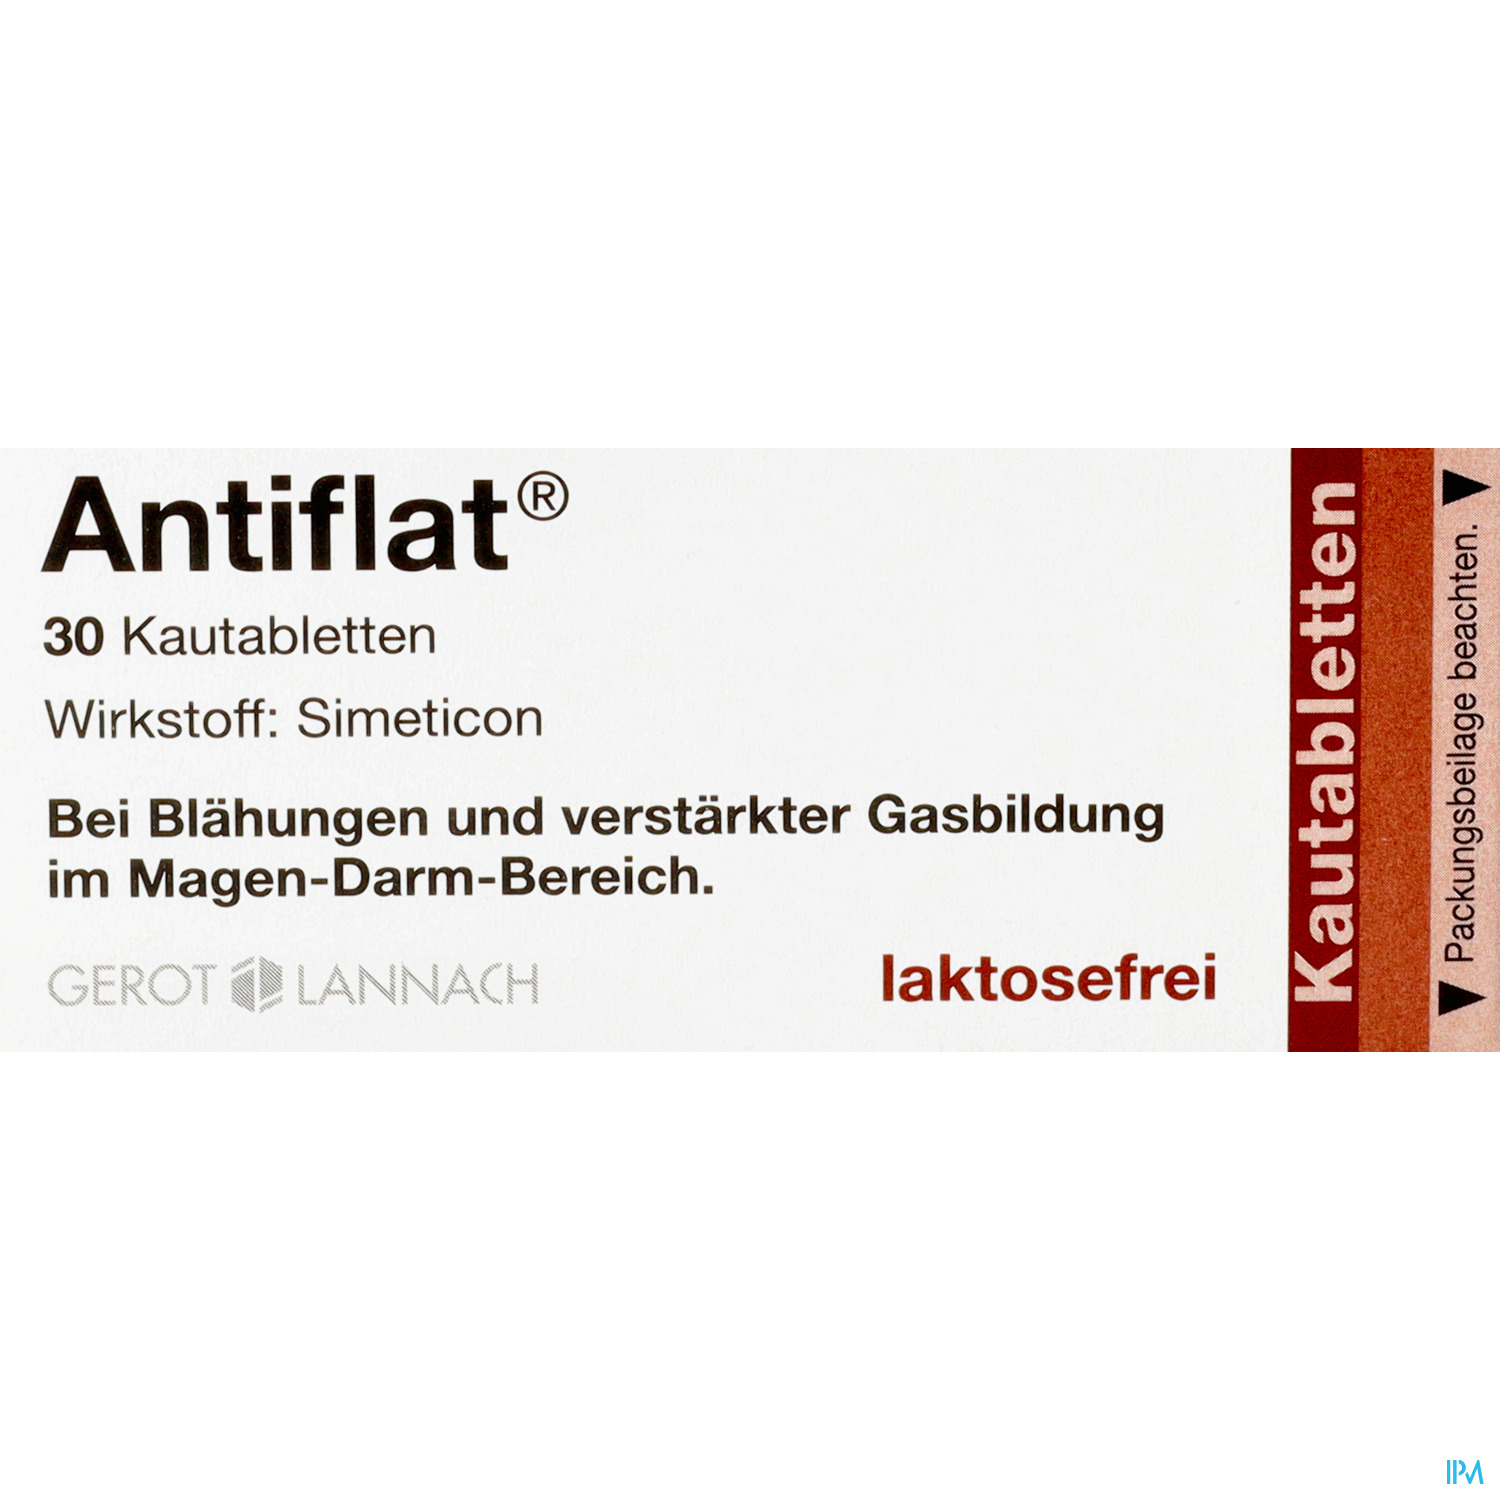 Antiflat - Kautabletten